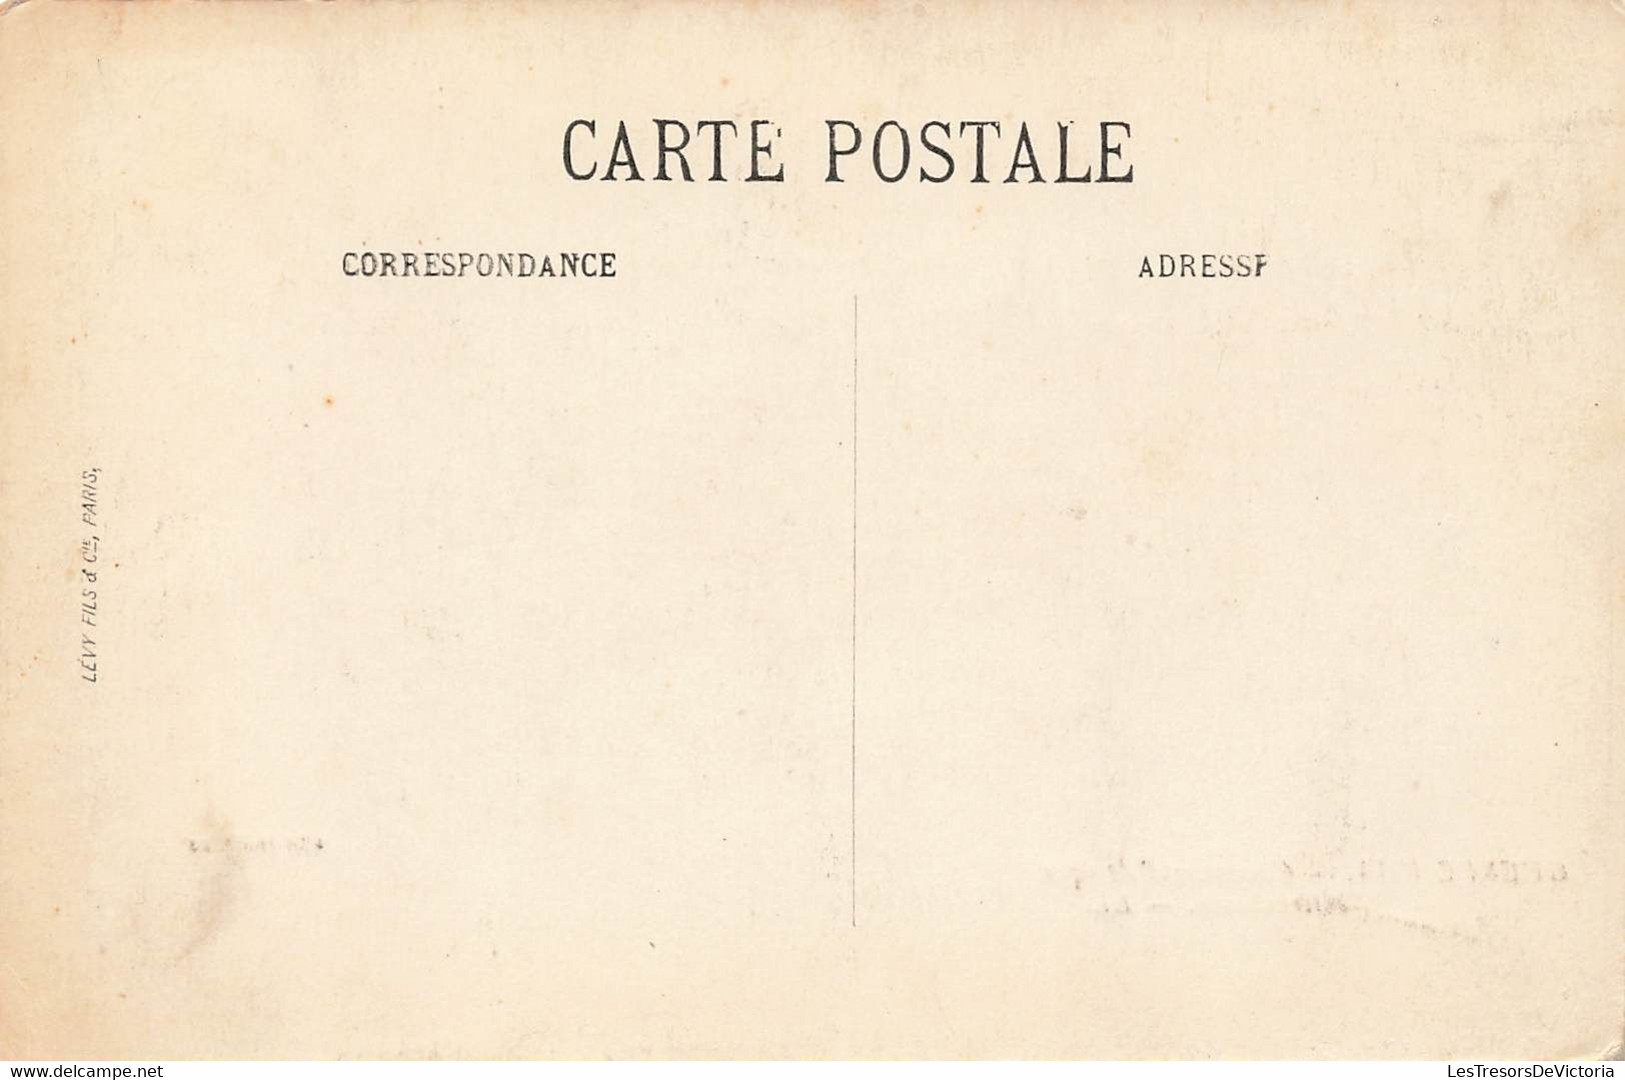 CPA Stereoscopique - Guerre 1914 - Chasseurs D'afrique Mitrailleurs - LL - - Cartes Stéréoscopiques